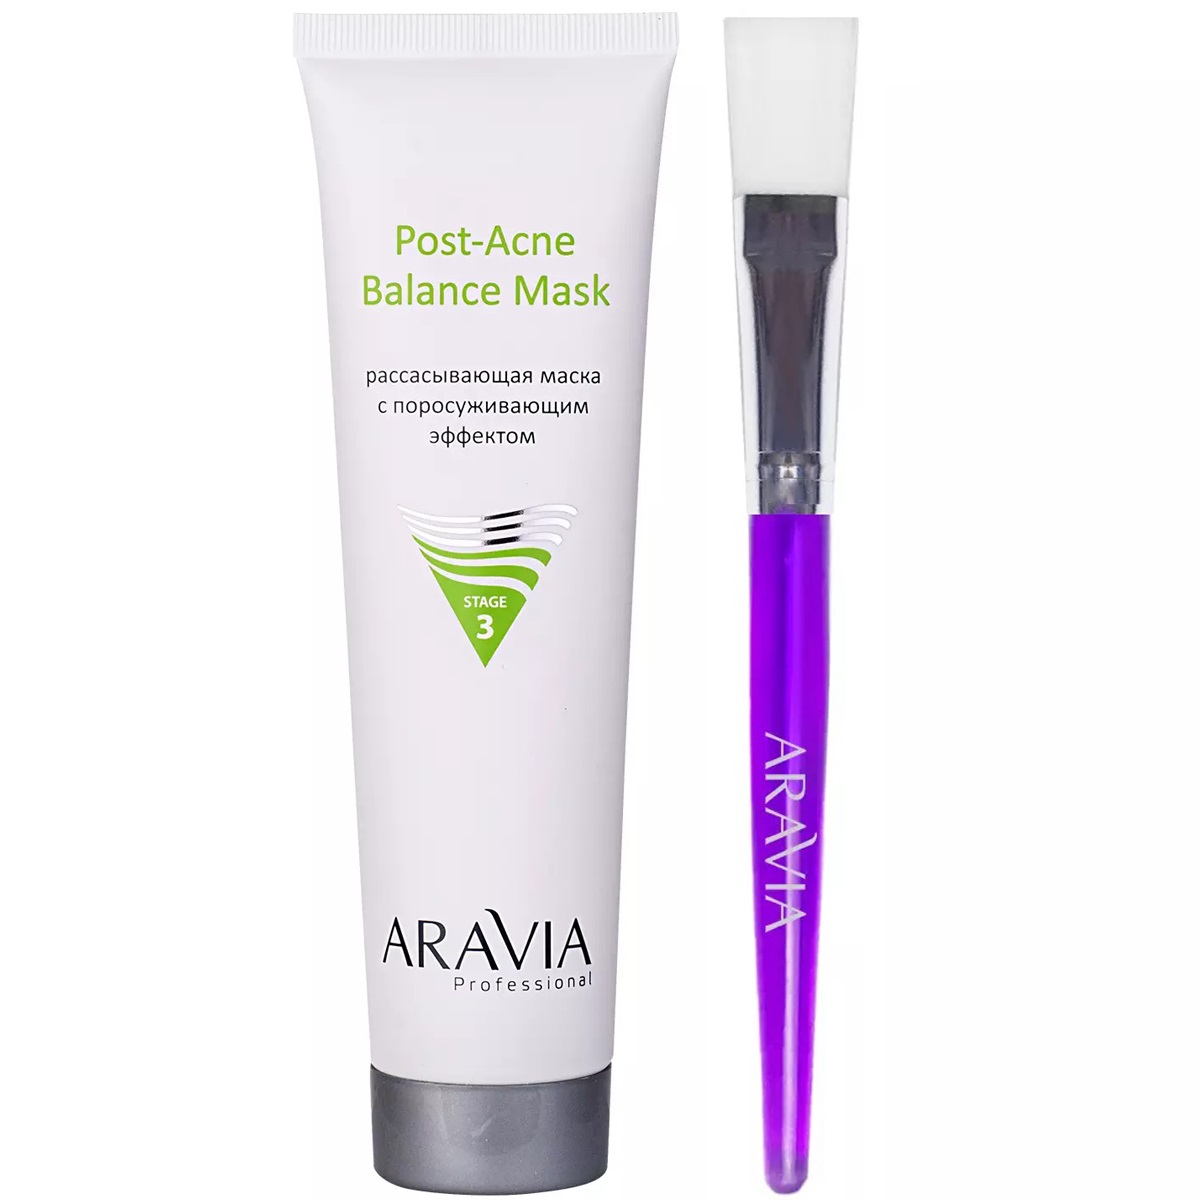 Aravia Professional Набор для проблемной и жирной кожи: маска, 100 мл + кисть для нанесения масок, 1 шт (Aravia Professional, Уход за лицом) фотографии